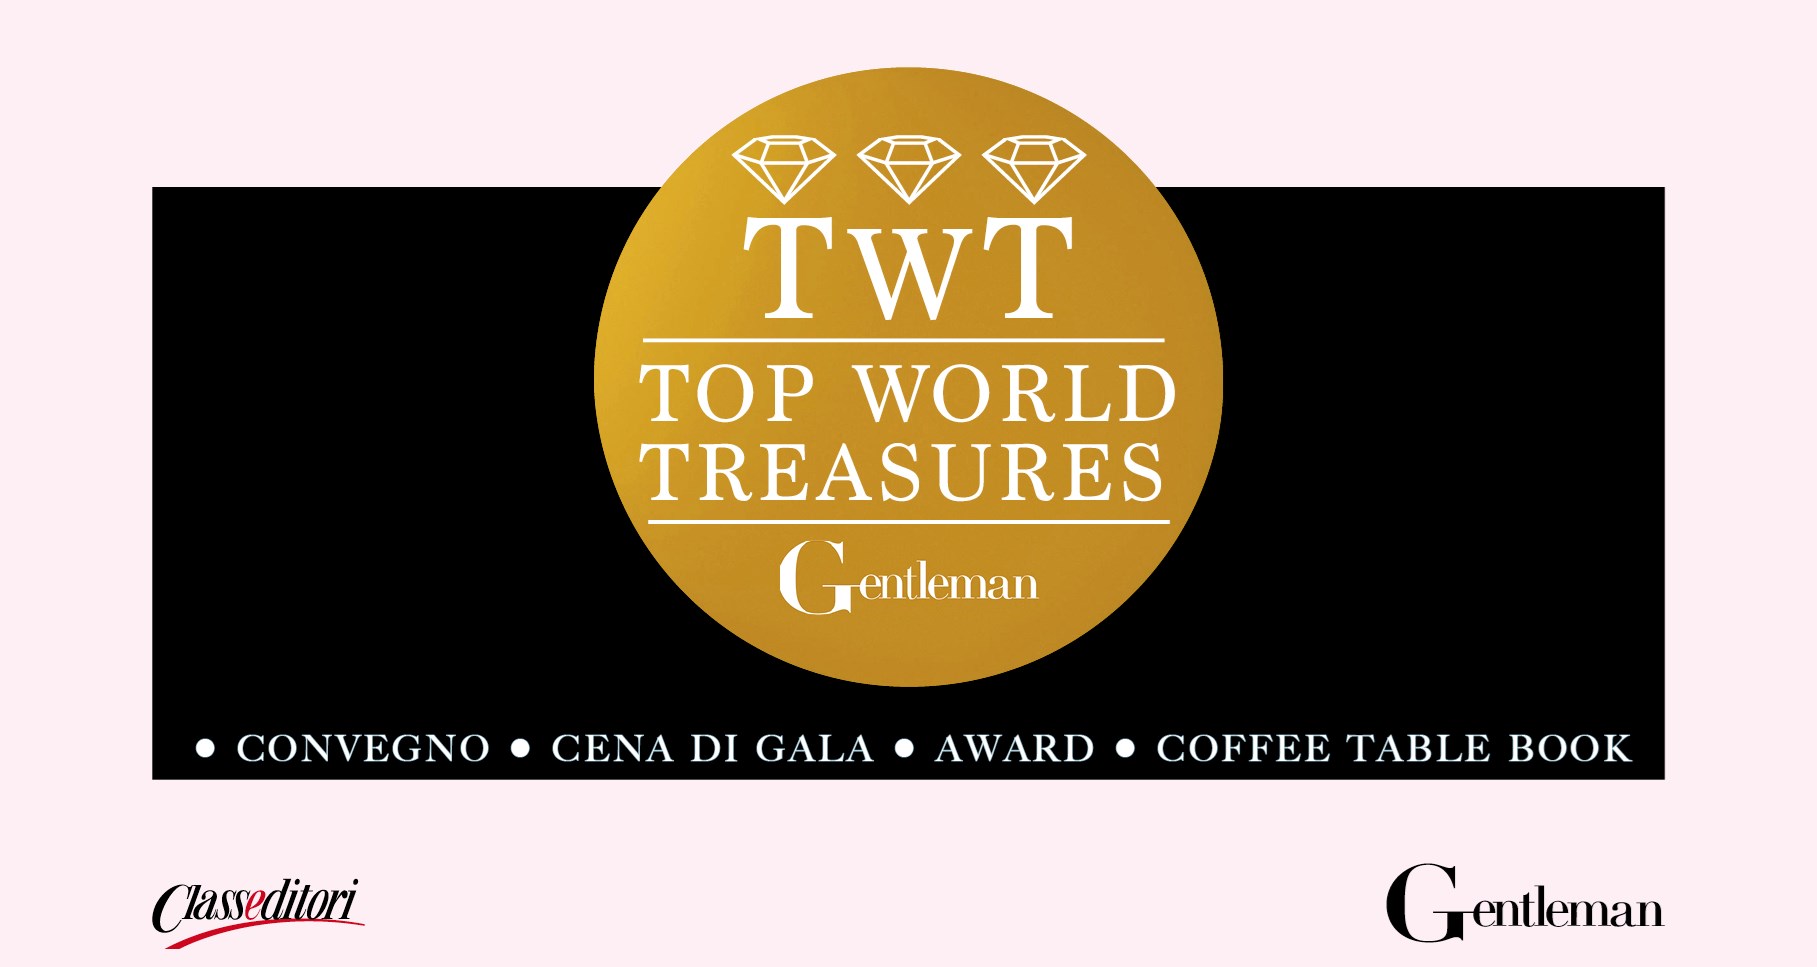 Gentleman TWT - Top World Treasures 